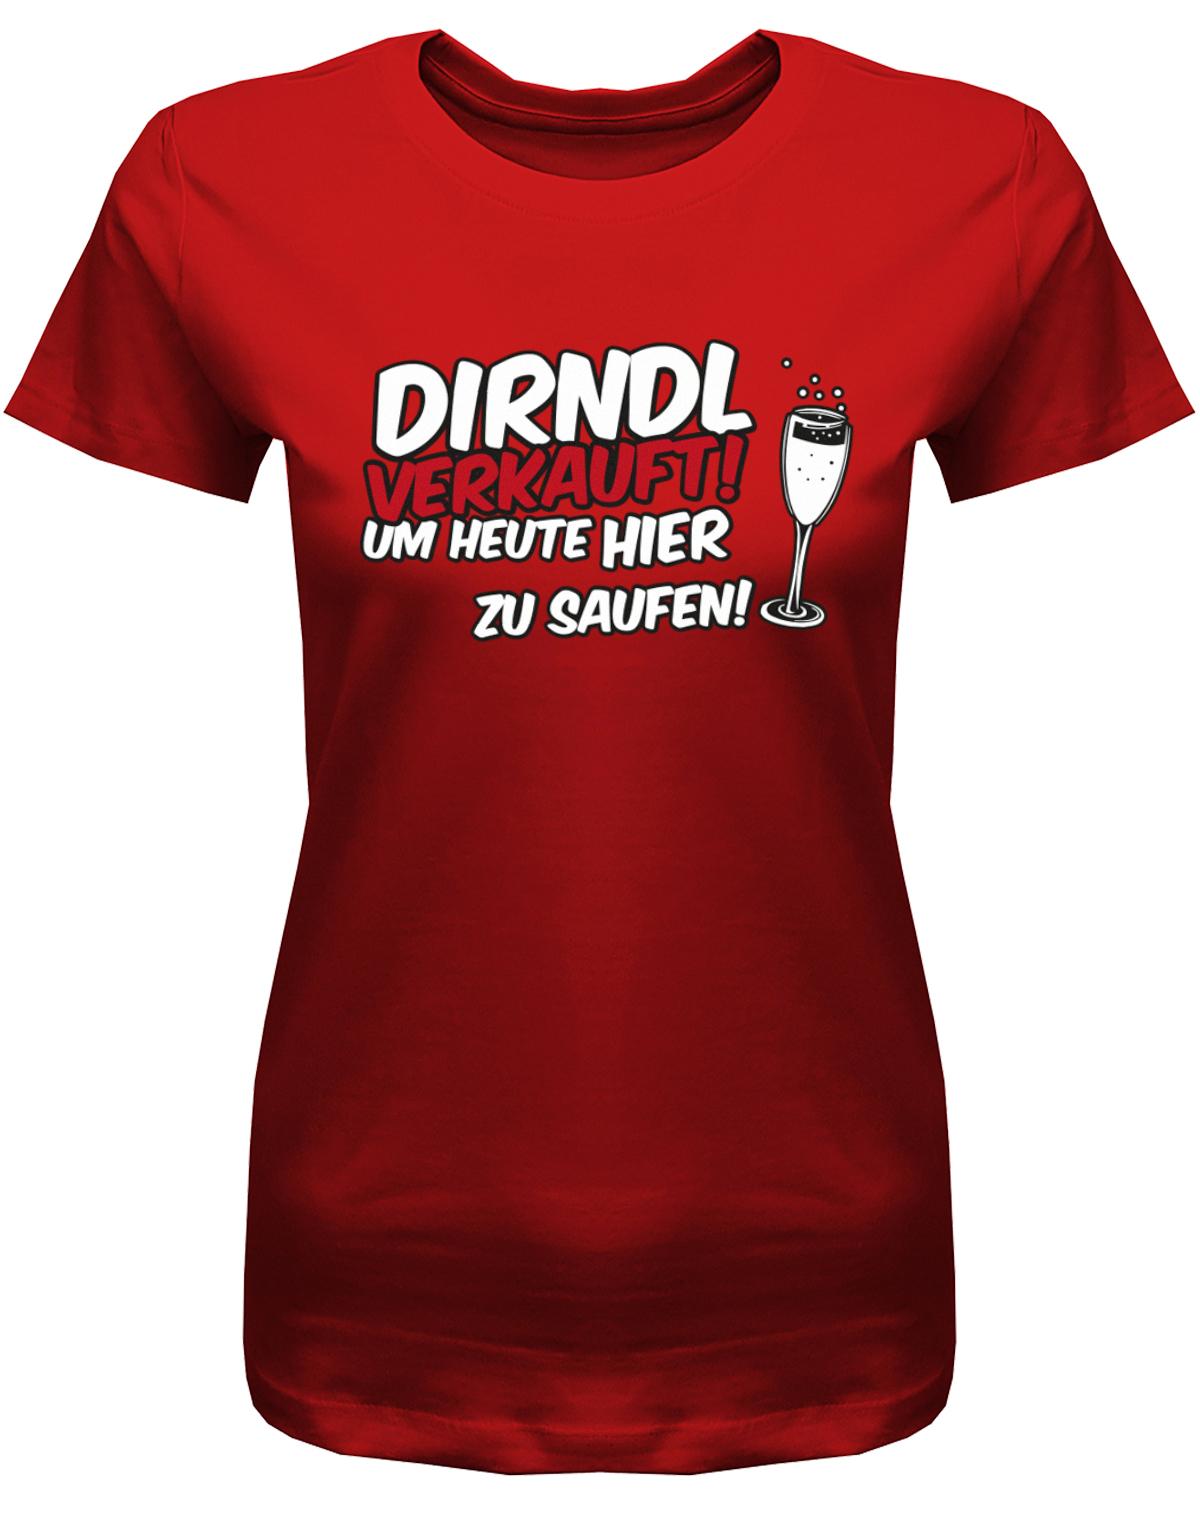 Dirndl-verkauft-um-heute-hier-zu-saufen-Damen-Shirt-Rot